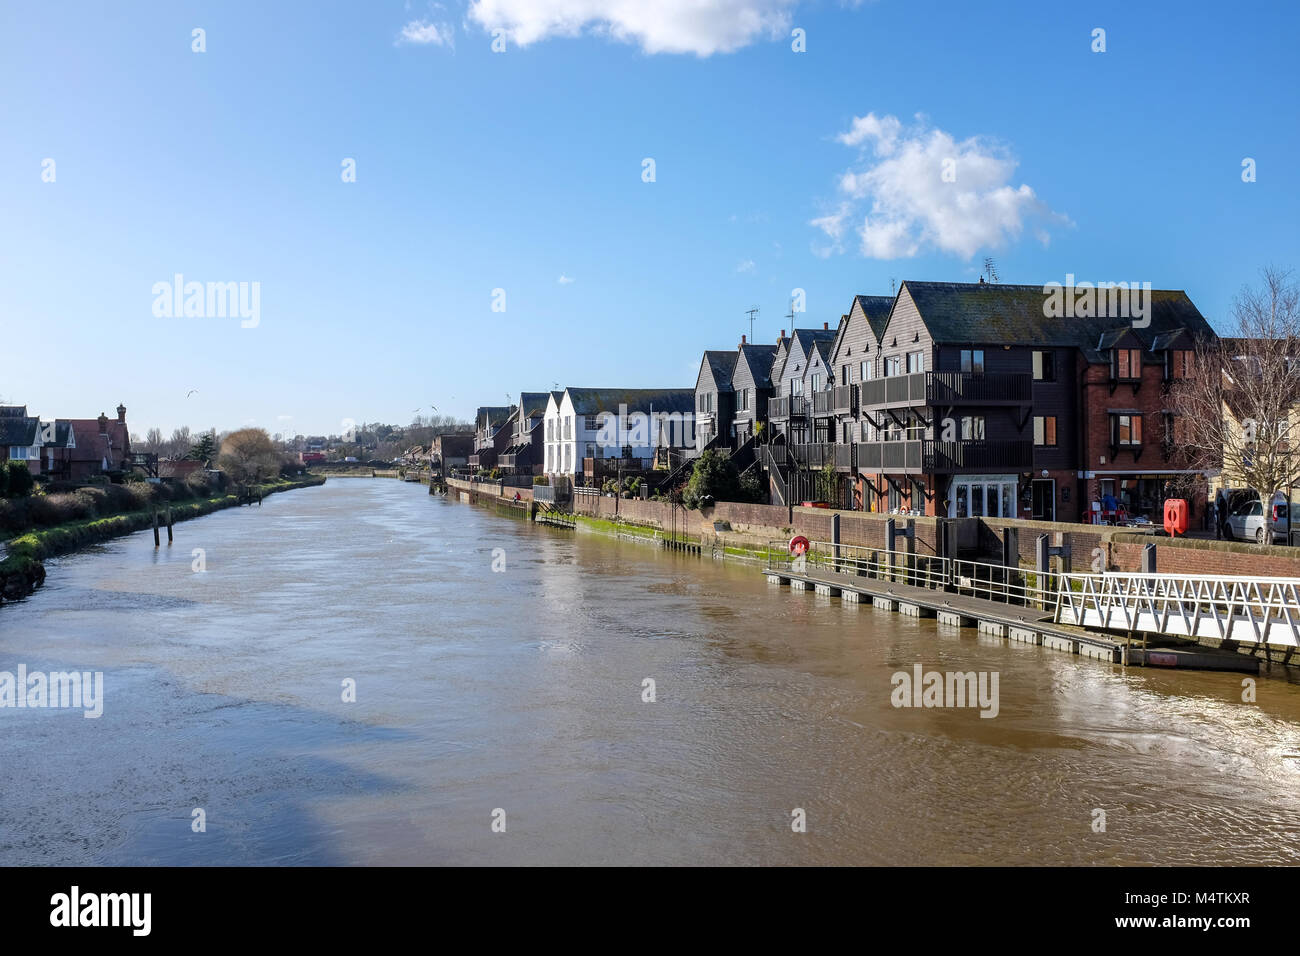 Arundel West Sussex UK Februar 2018 - Häuser und Wohnungen mit Blick auf den Fluss Arun bei Flut, wo hat es Probleme gegeben mit Hochwasser Stockfoto